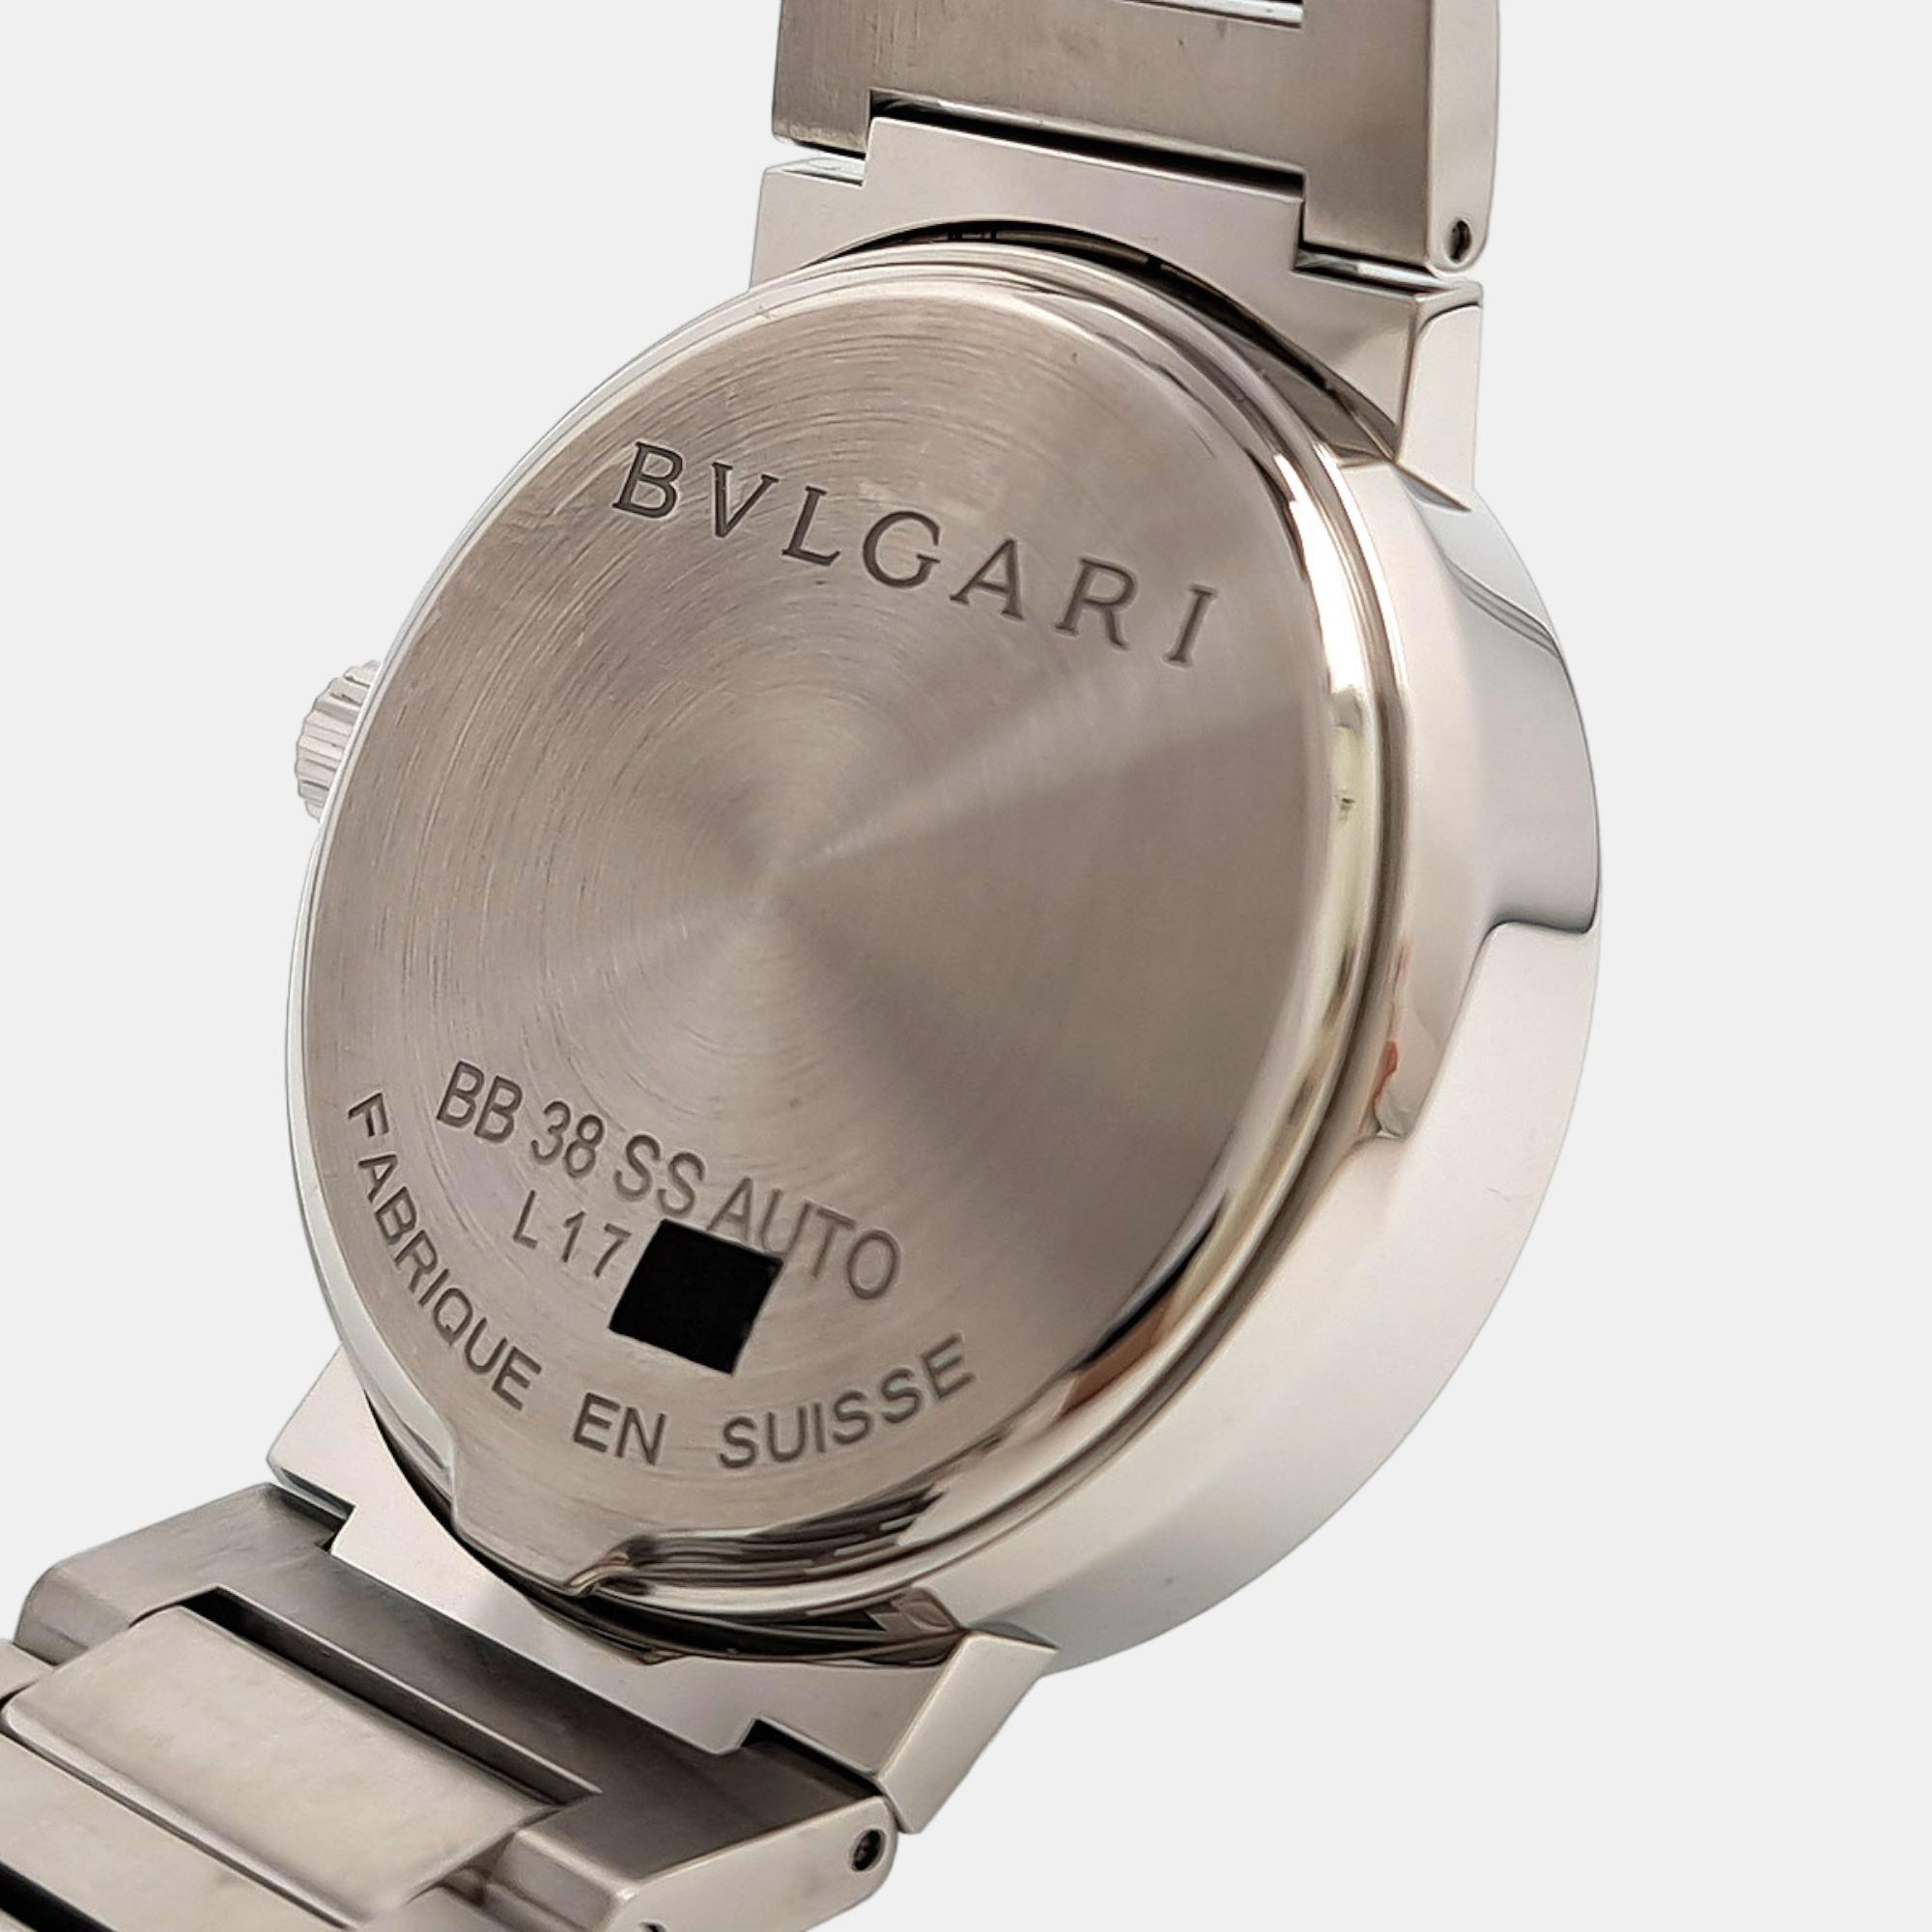 Bvlgari Black Stainless Steel Bvlgari Bvlgari BB38 Automatic Men's Wristwatch 38 Mm